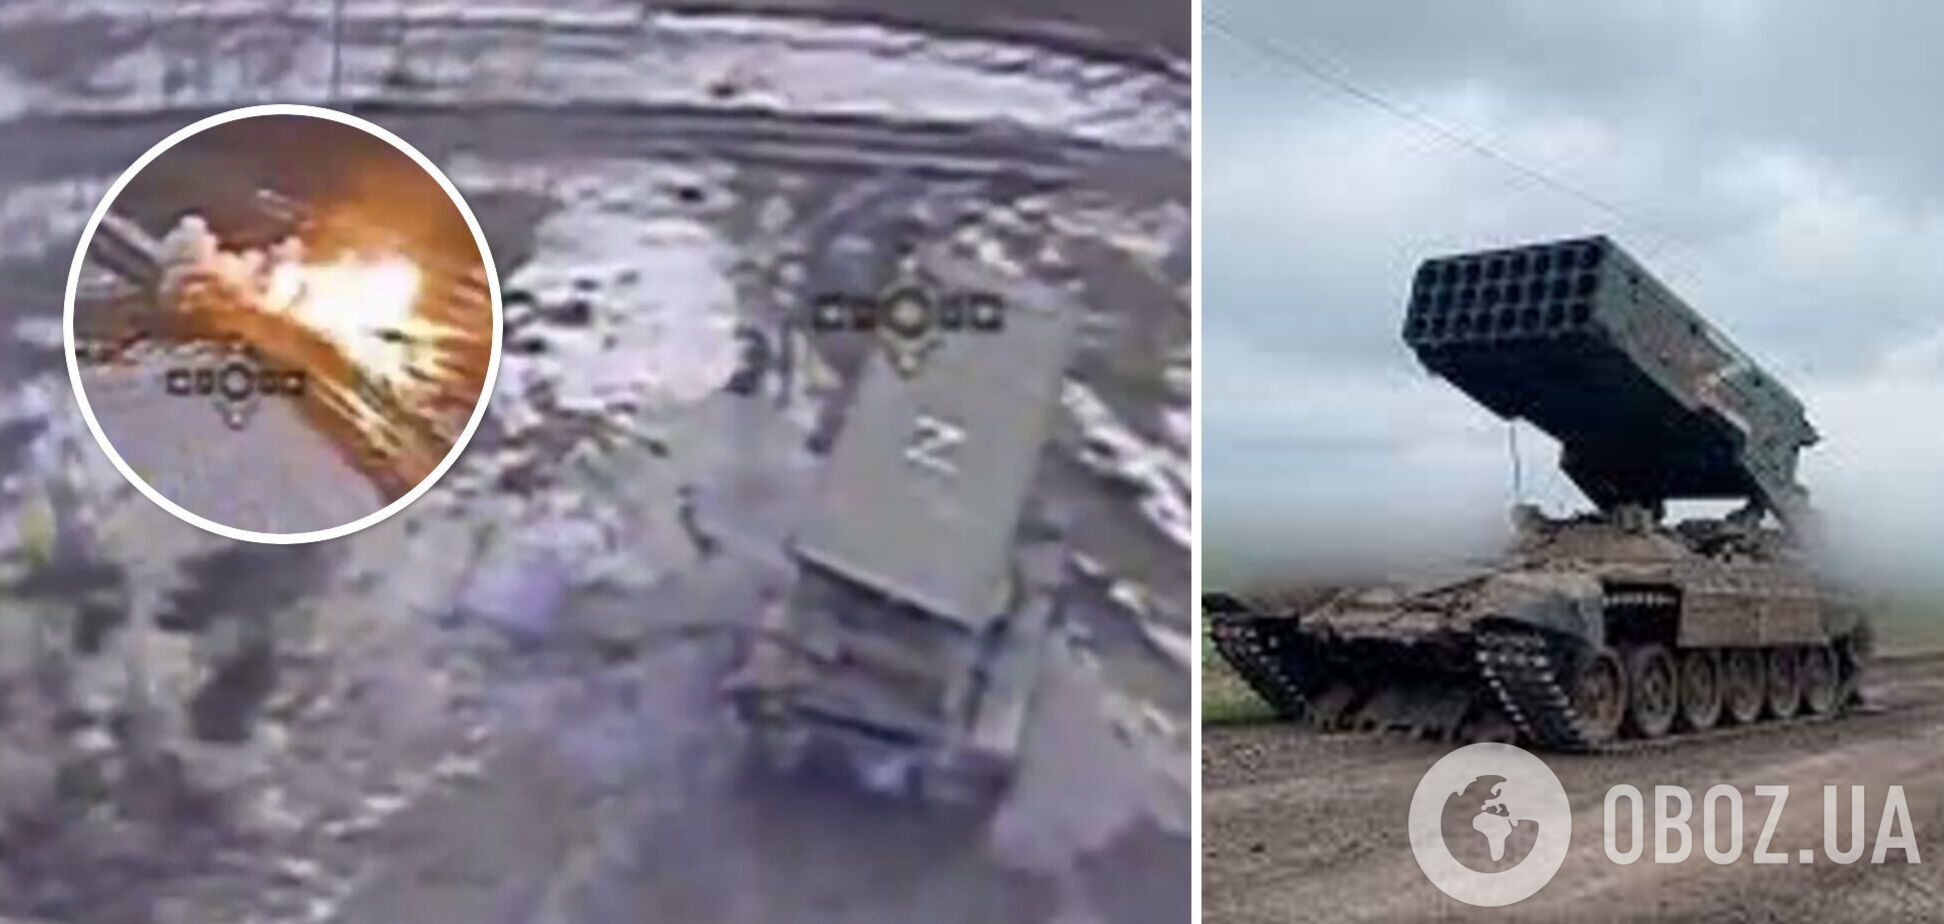 Спецназовцы СБУ уничтожили вражеский 'Сонцепек': дрон прилетел прямо в момент залпа. Видео